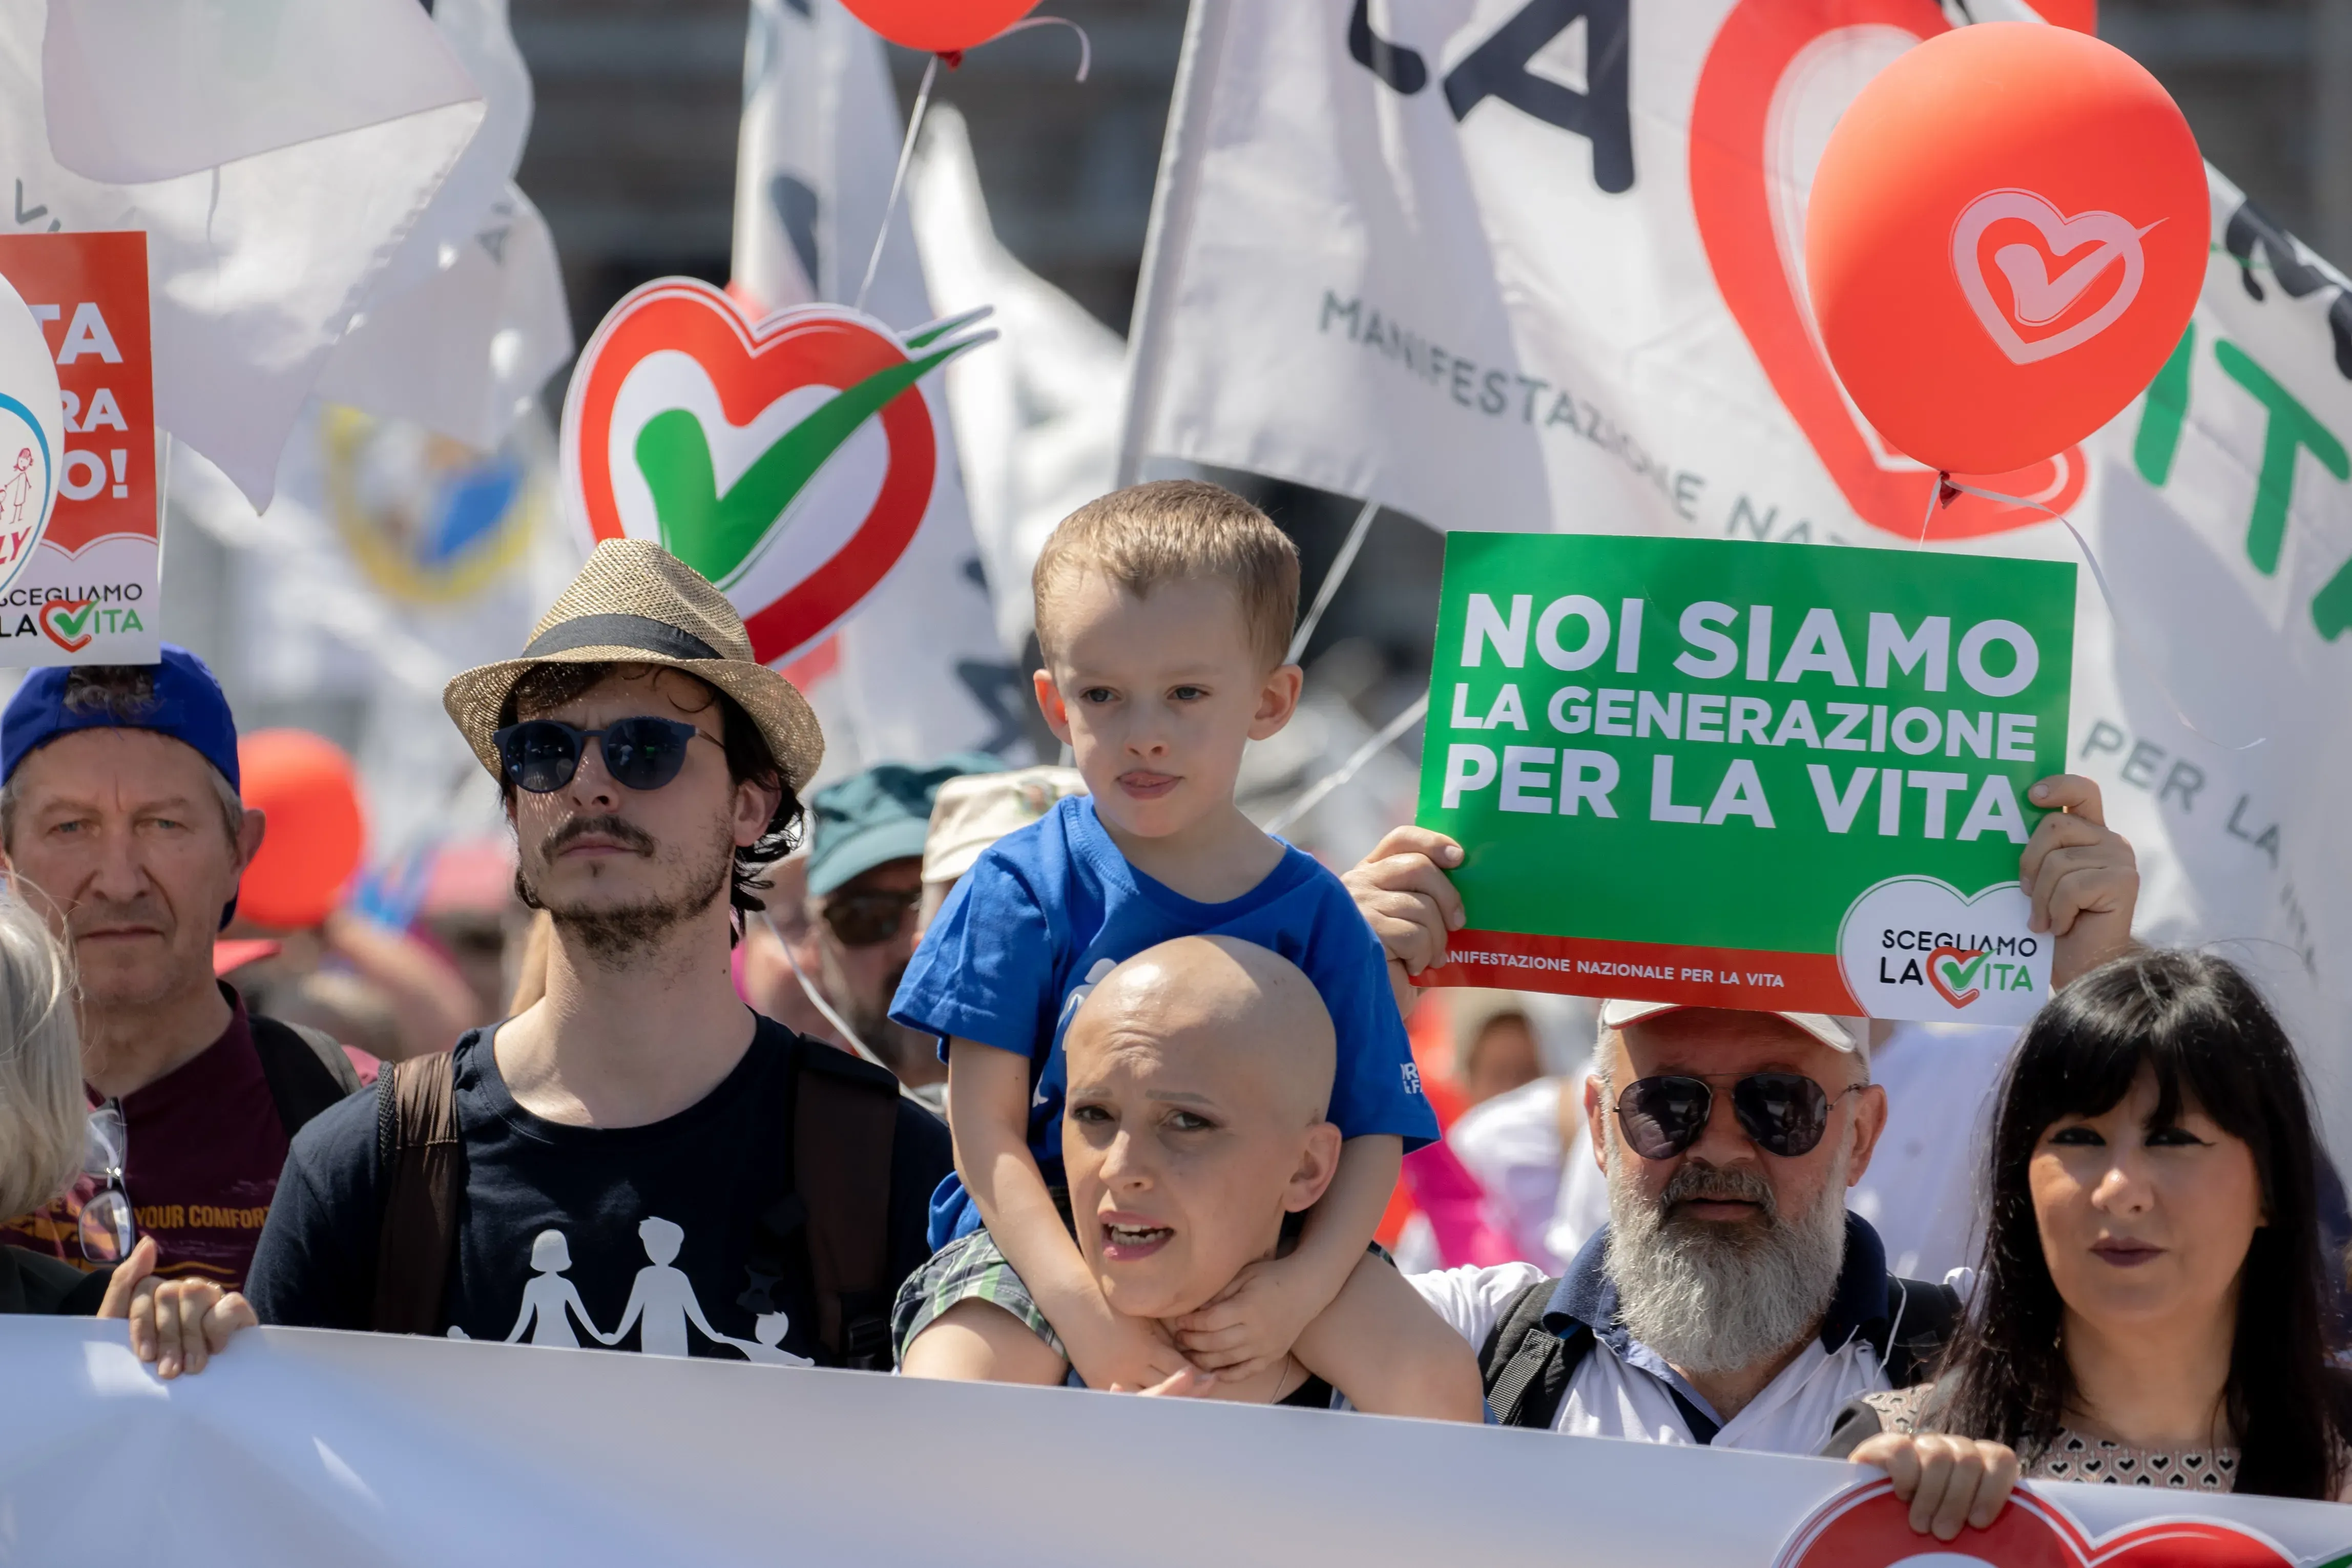 Les participants à la manifestation pro-vie en Italie, à Rome, le 21 mai 2022. Daniel Ibáñez/CNA